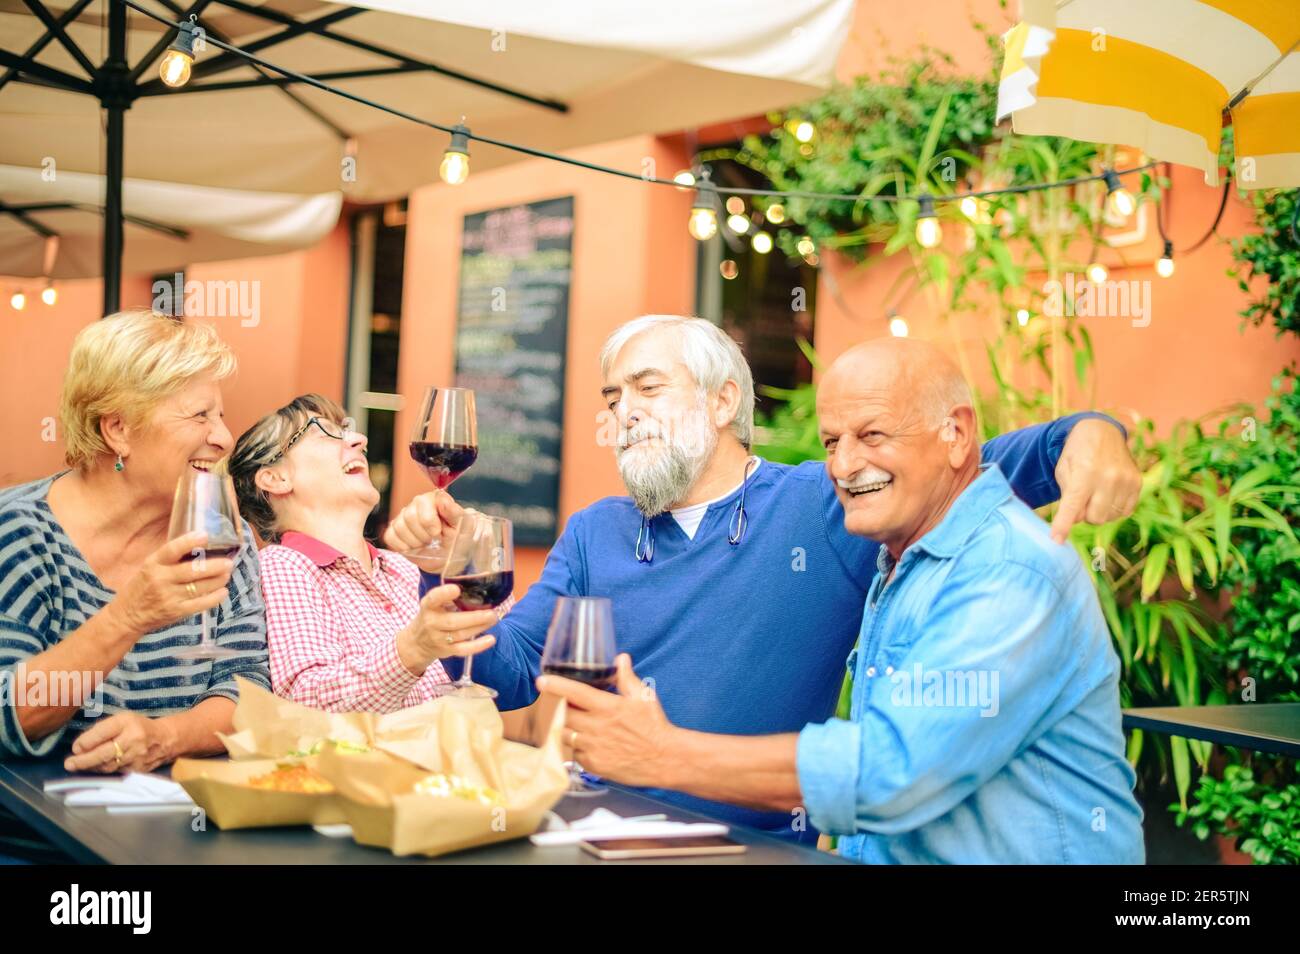 Ältere Leute lachen und rösten Rotwein im Restaurant - Freundschaftskonzept mit glücklichen reifen Freunden, die Spaß zusammen haben Zuhause im Garten Stockfoto